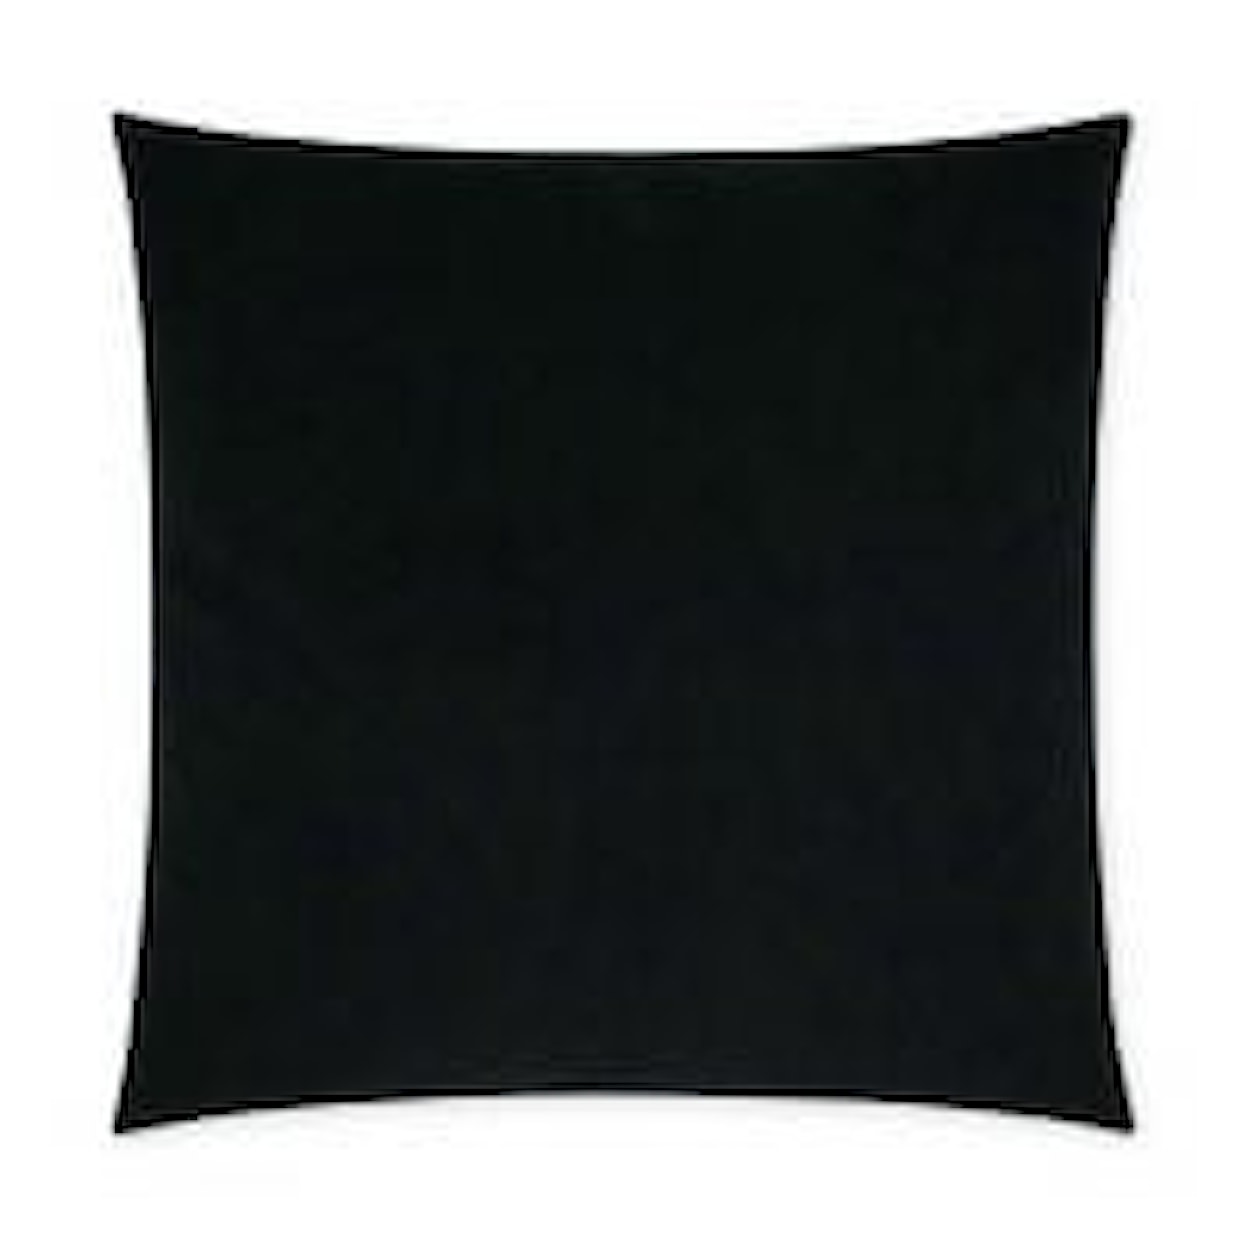 D.V. KAP Home Indoor Pillows POSH DUO BLACK 22" PILLOW